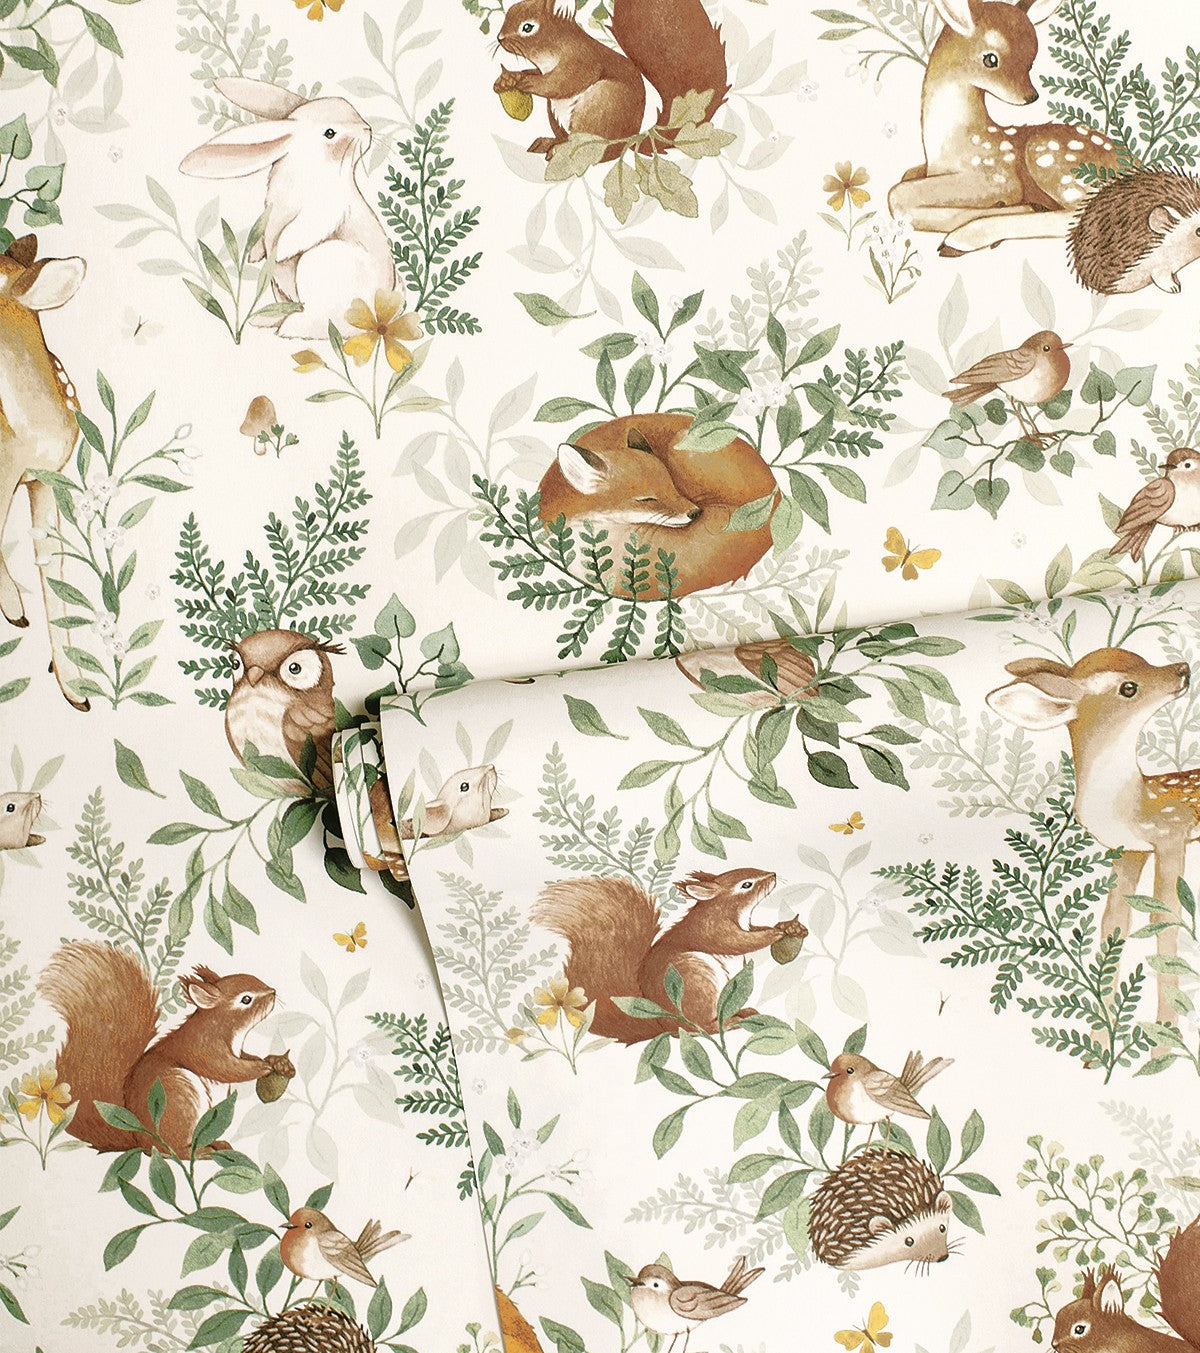 FOREST - Children's wallpaper - Forest animals motif